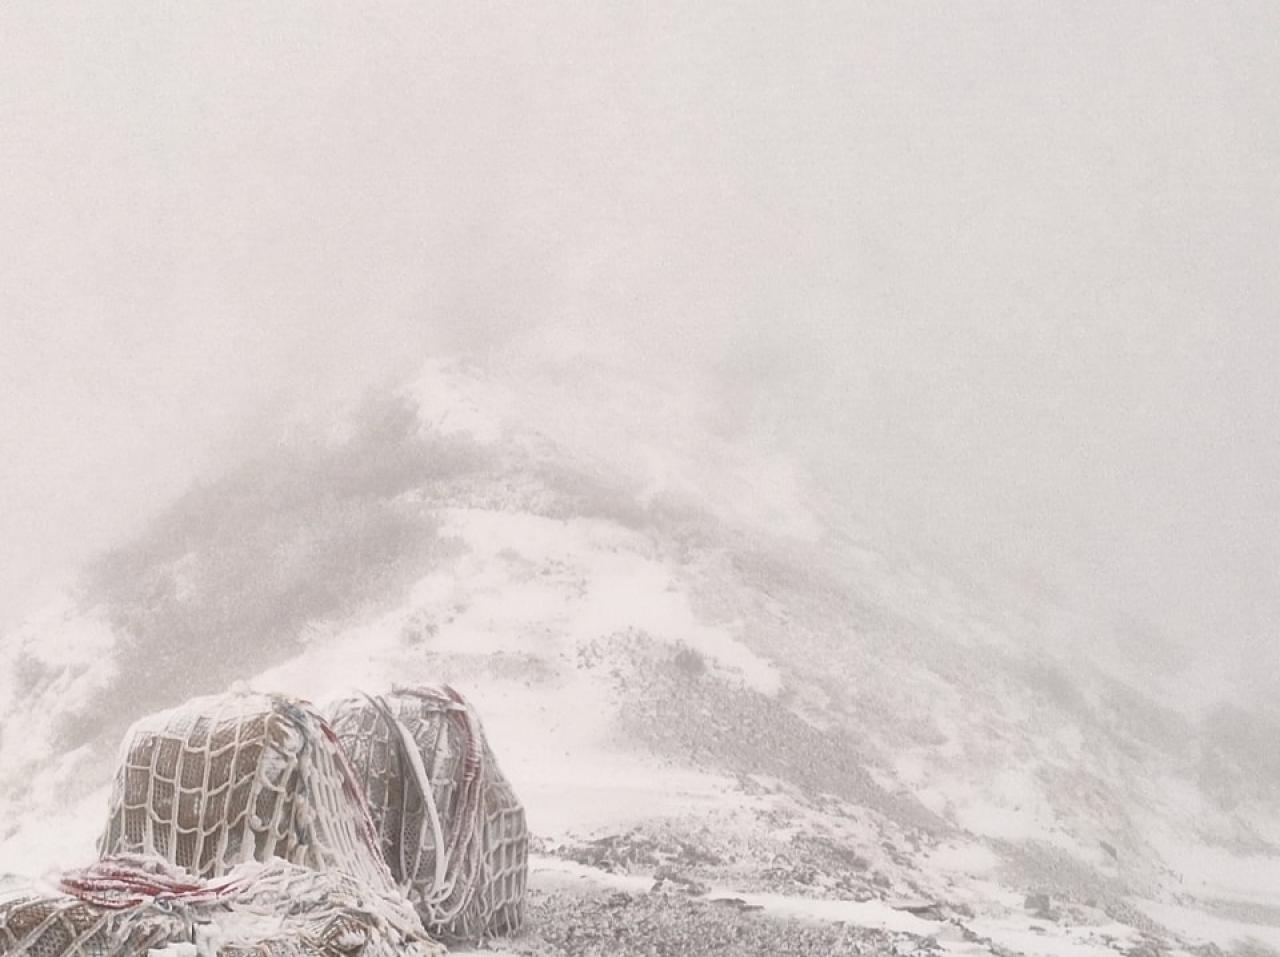 06:00  五竜岳への登り口。ここは、風が抜ける場所で雪が吹き飛ばされています